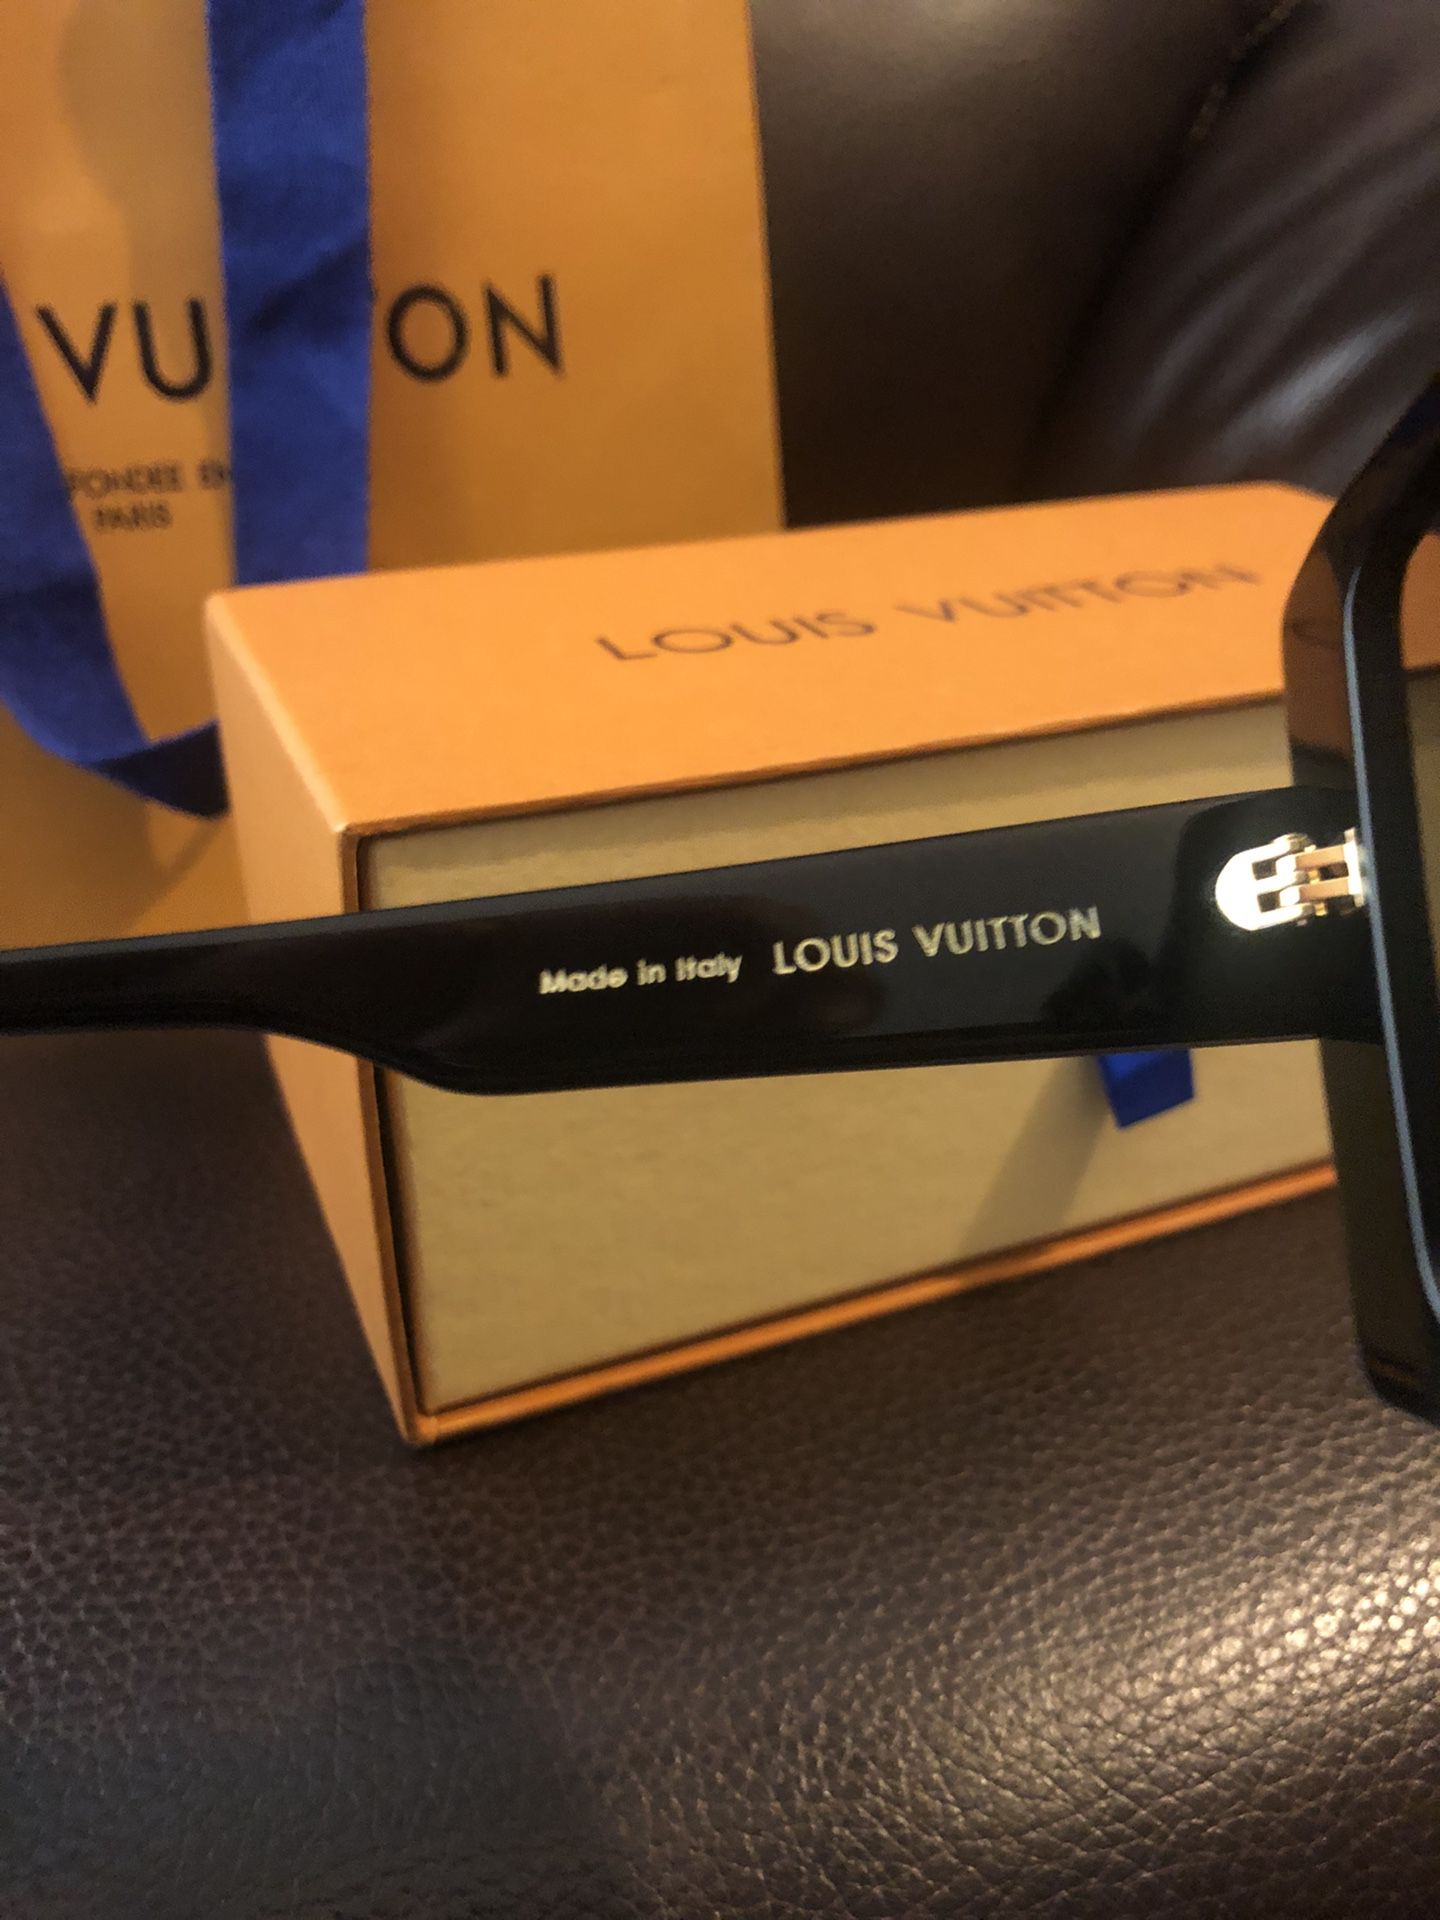 Louis Vuitton attitude sunglasses for Sale in Lodi, NJ - OfferUp